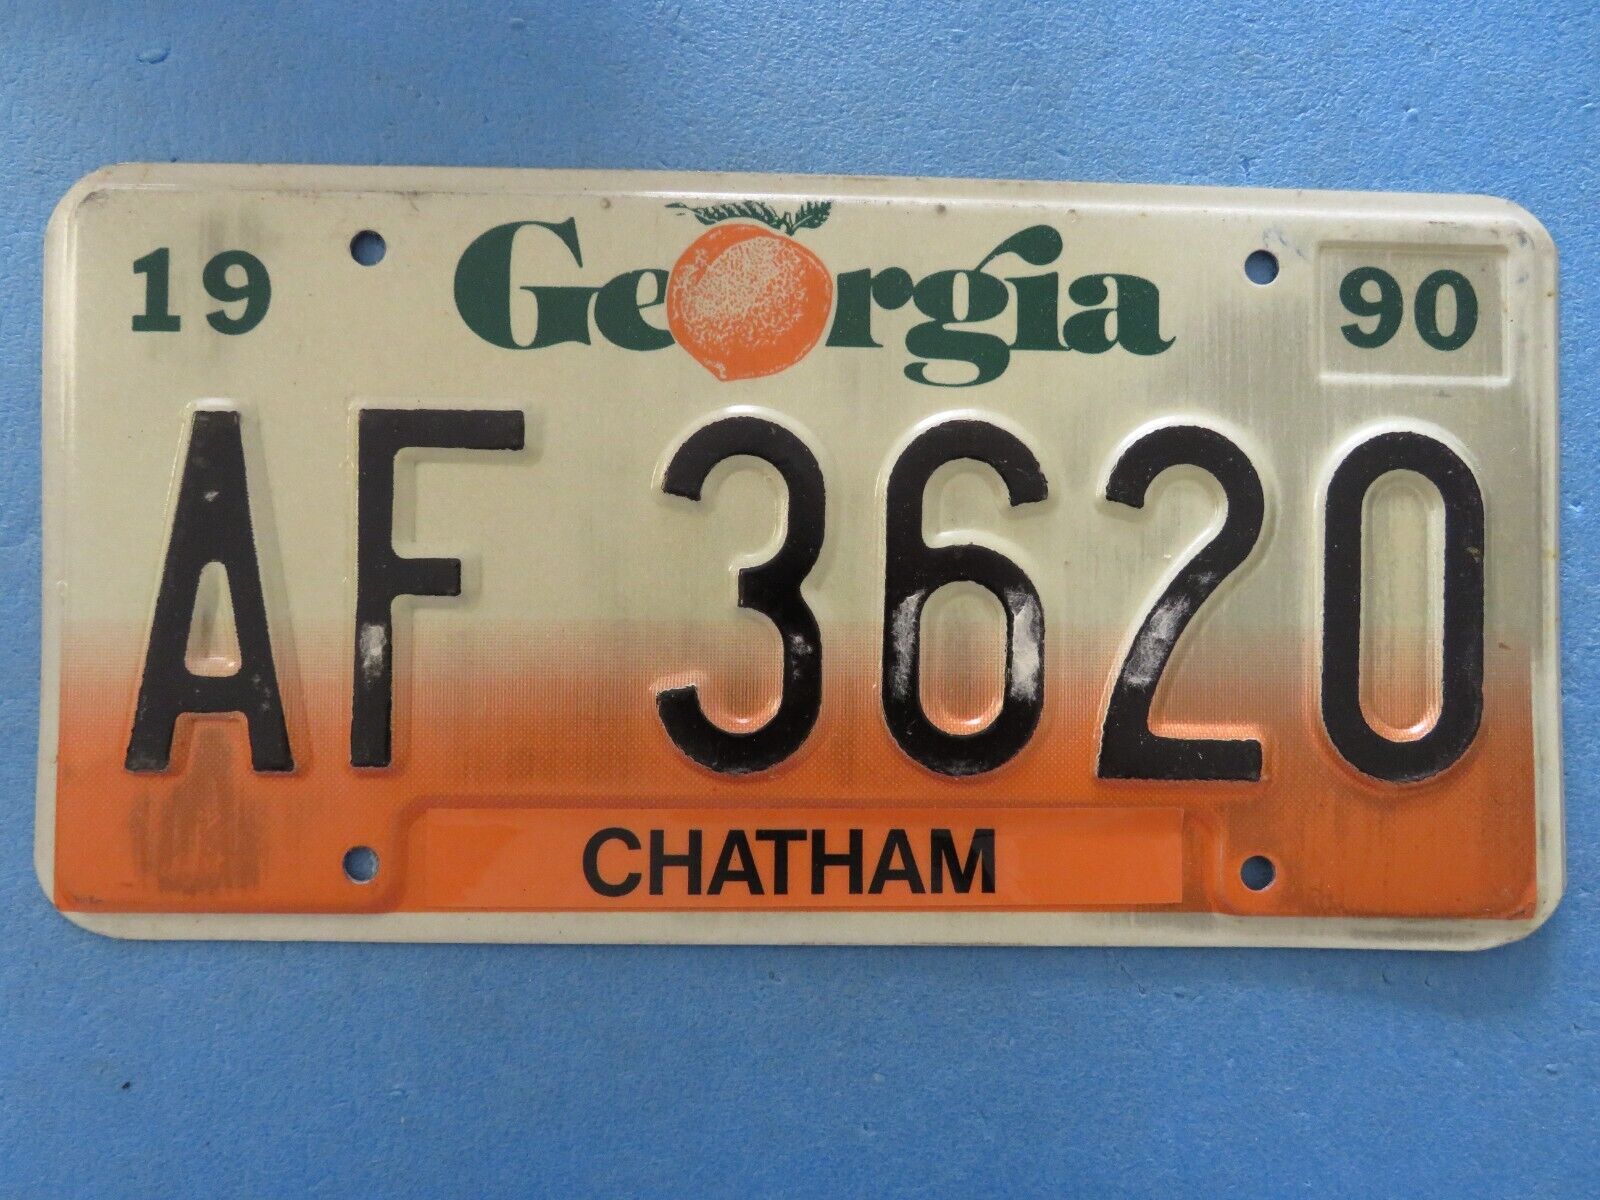 VINTAGE Georgia State License Plate 1990 CHATHAM CO. AF 3620